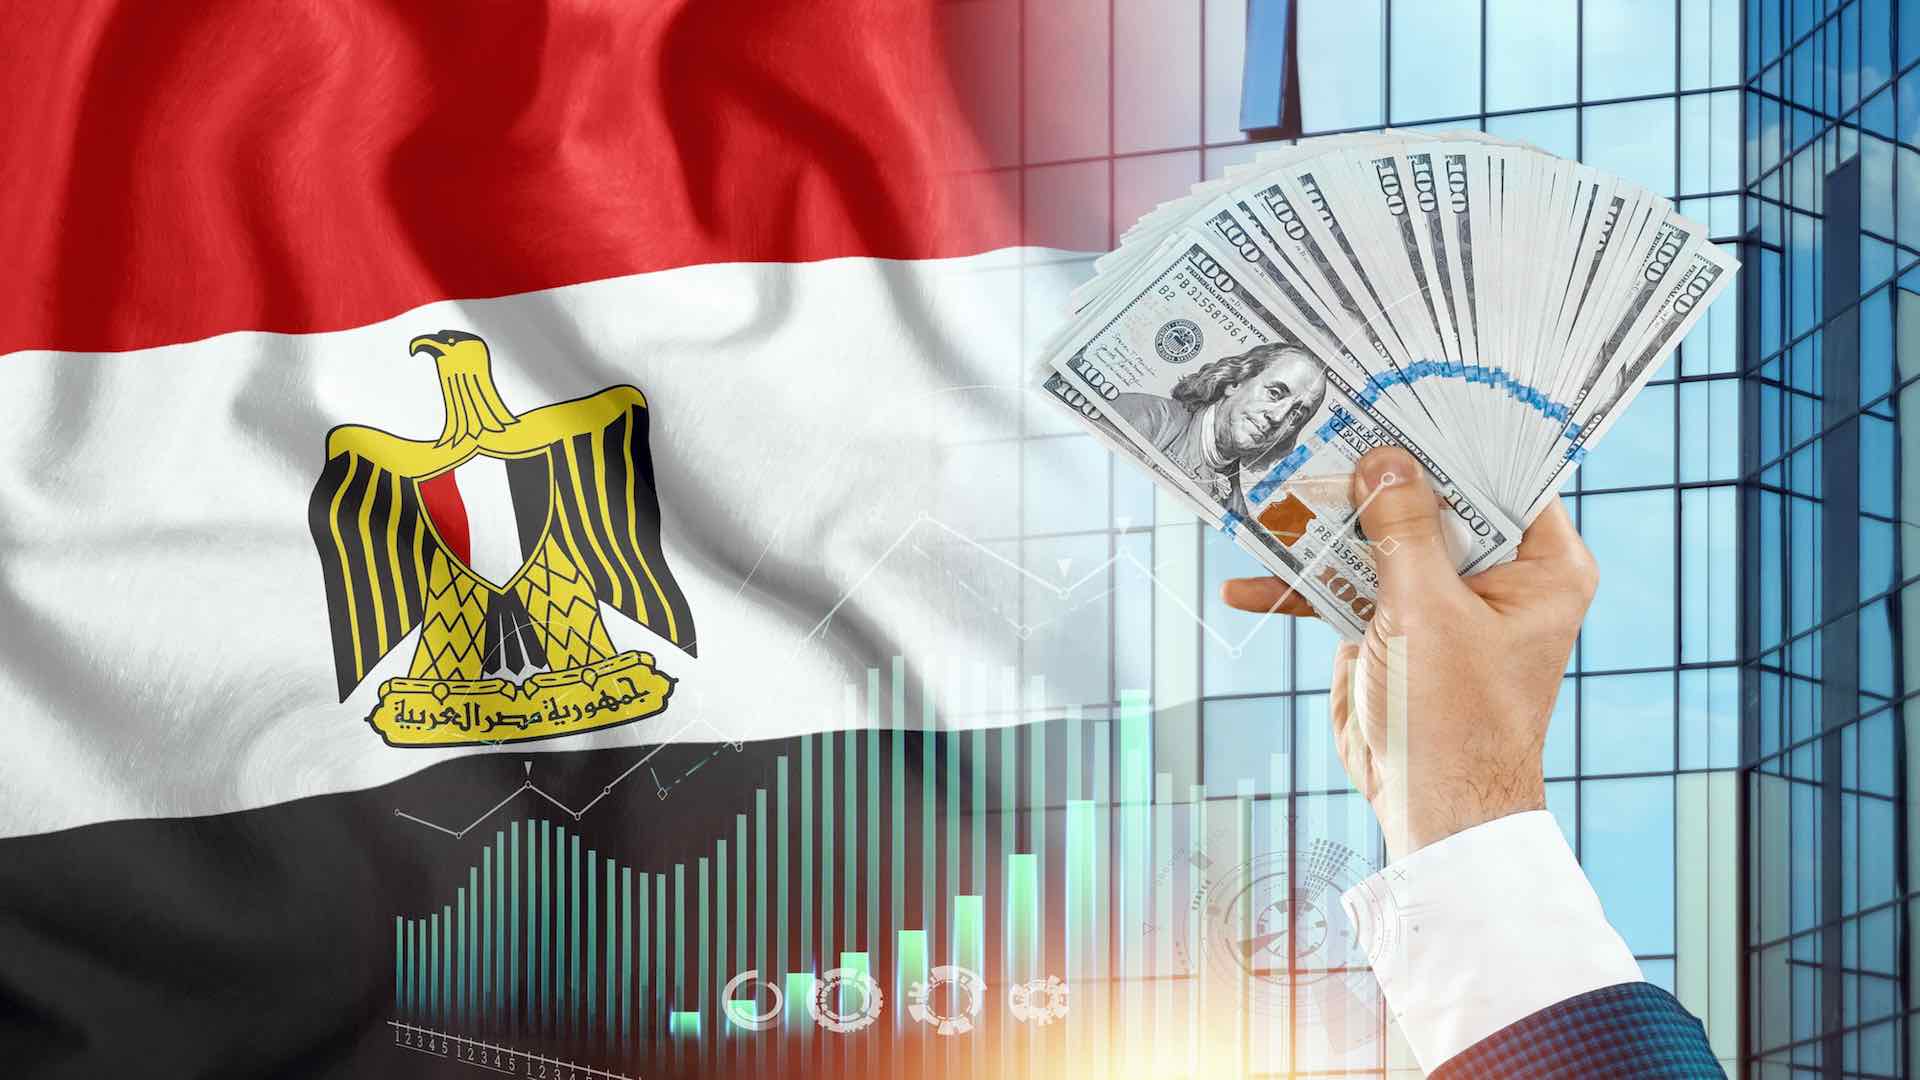 مصر في صدارة الارتفاعات بين البورصات العربية خلال النصف الأول من العام